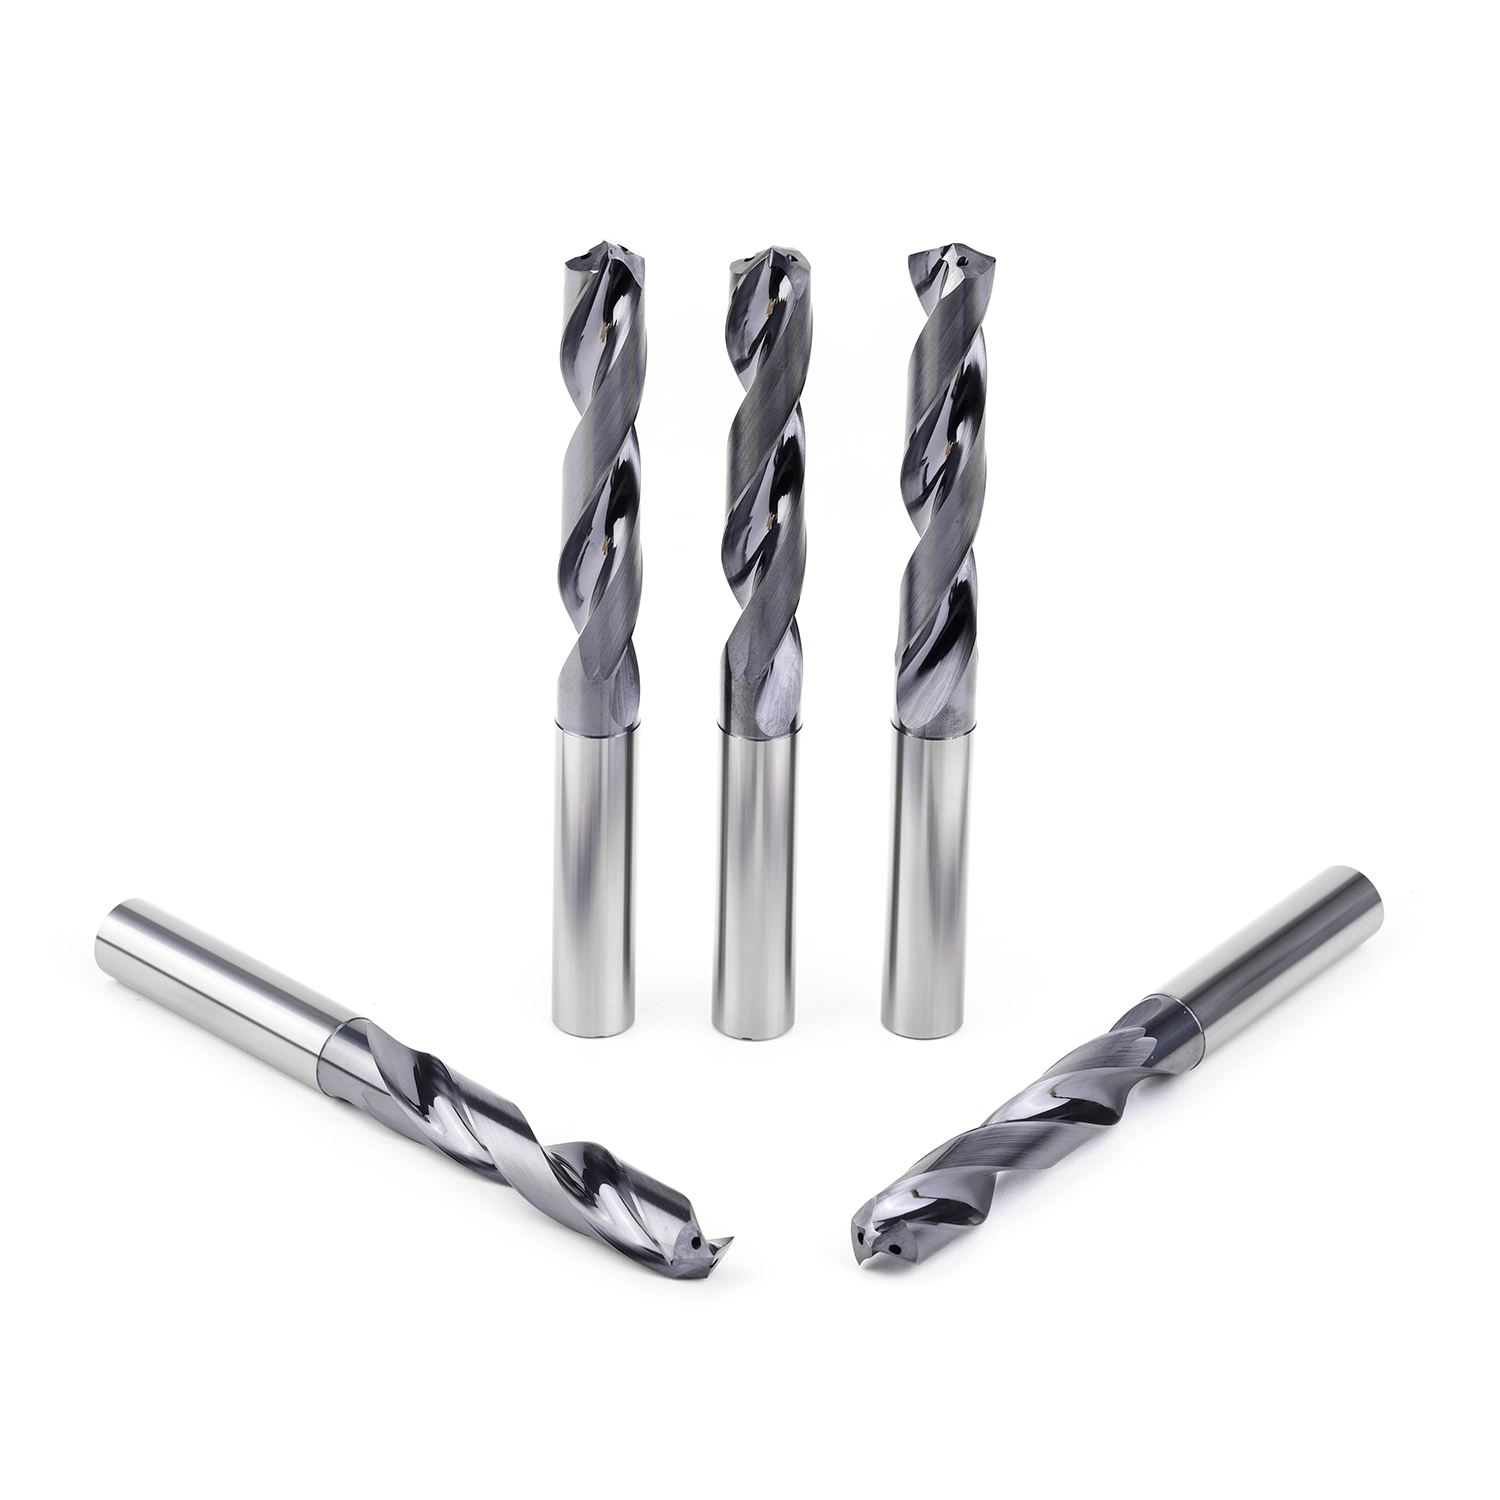 Customized CNC Tools Solid Carbide Twist Drill Bit